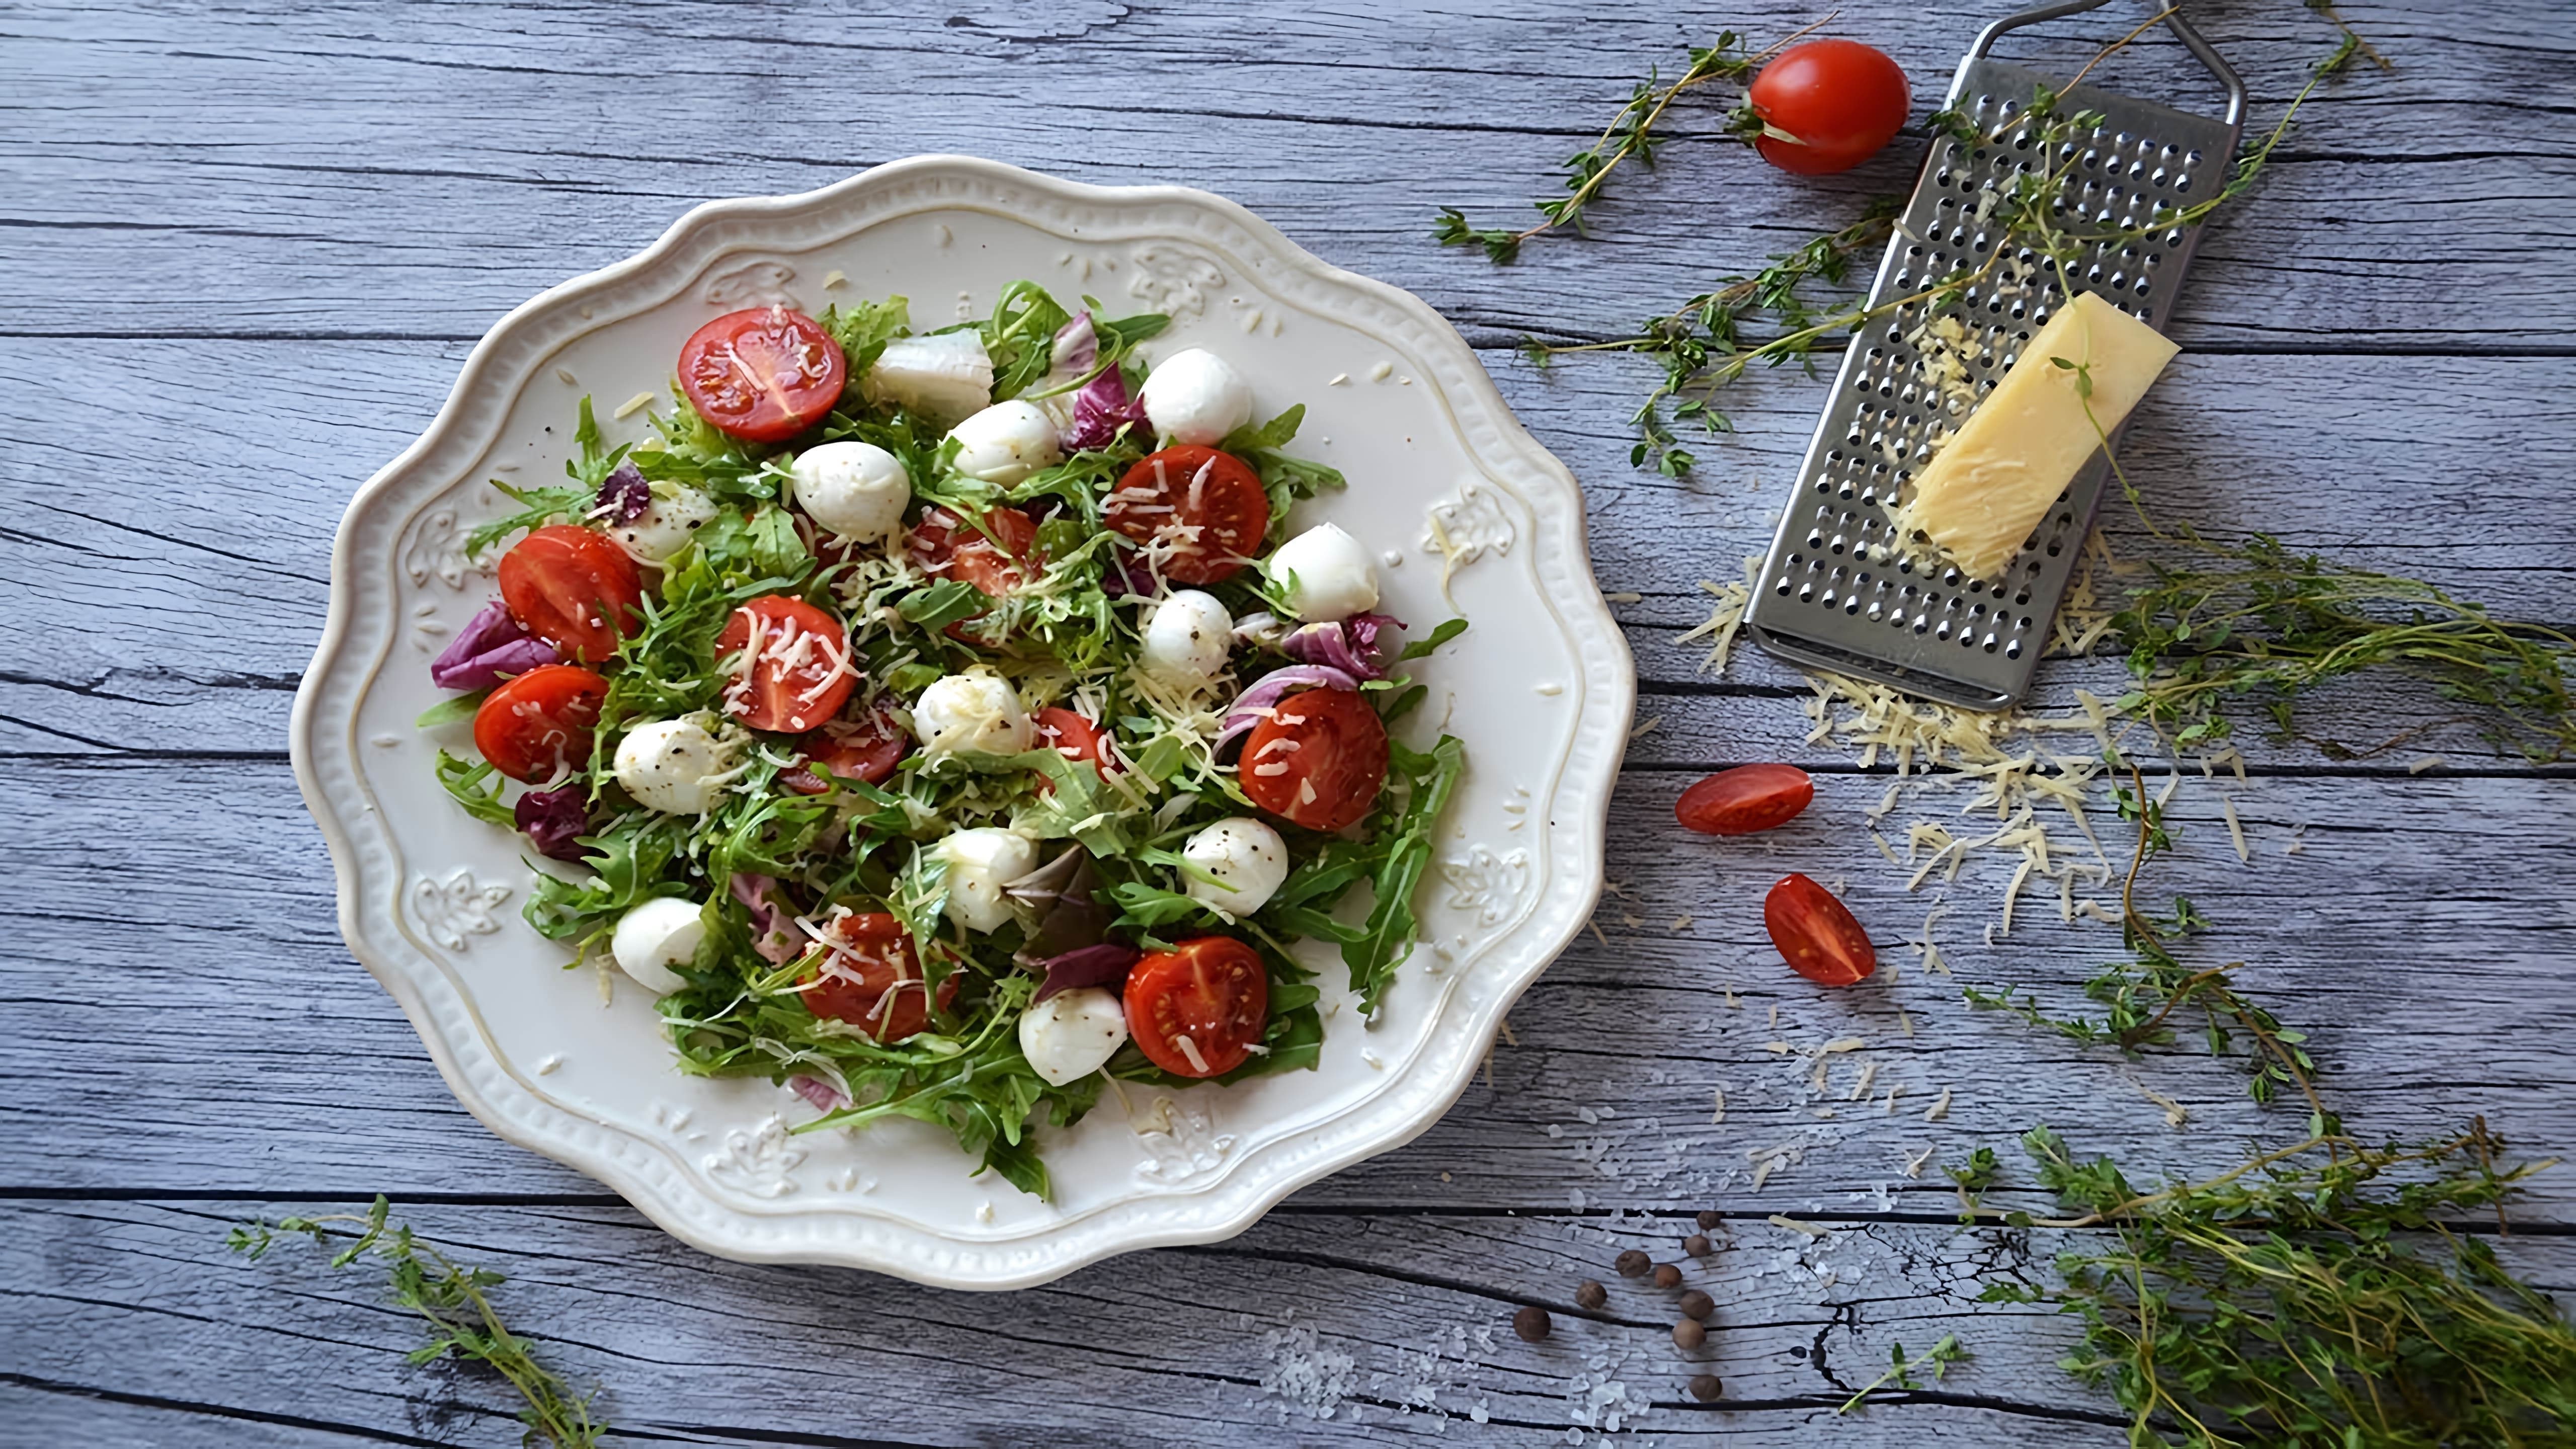 Салат с моцареллой, рукколой и помидорами черри - это вкусное и полезное блюдо, которое можно приготовить в домашних условиях